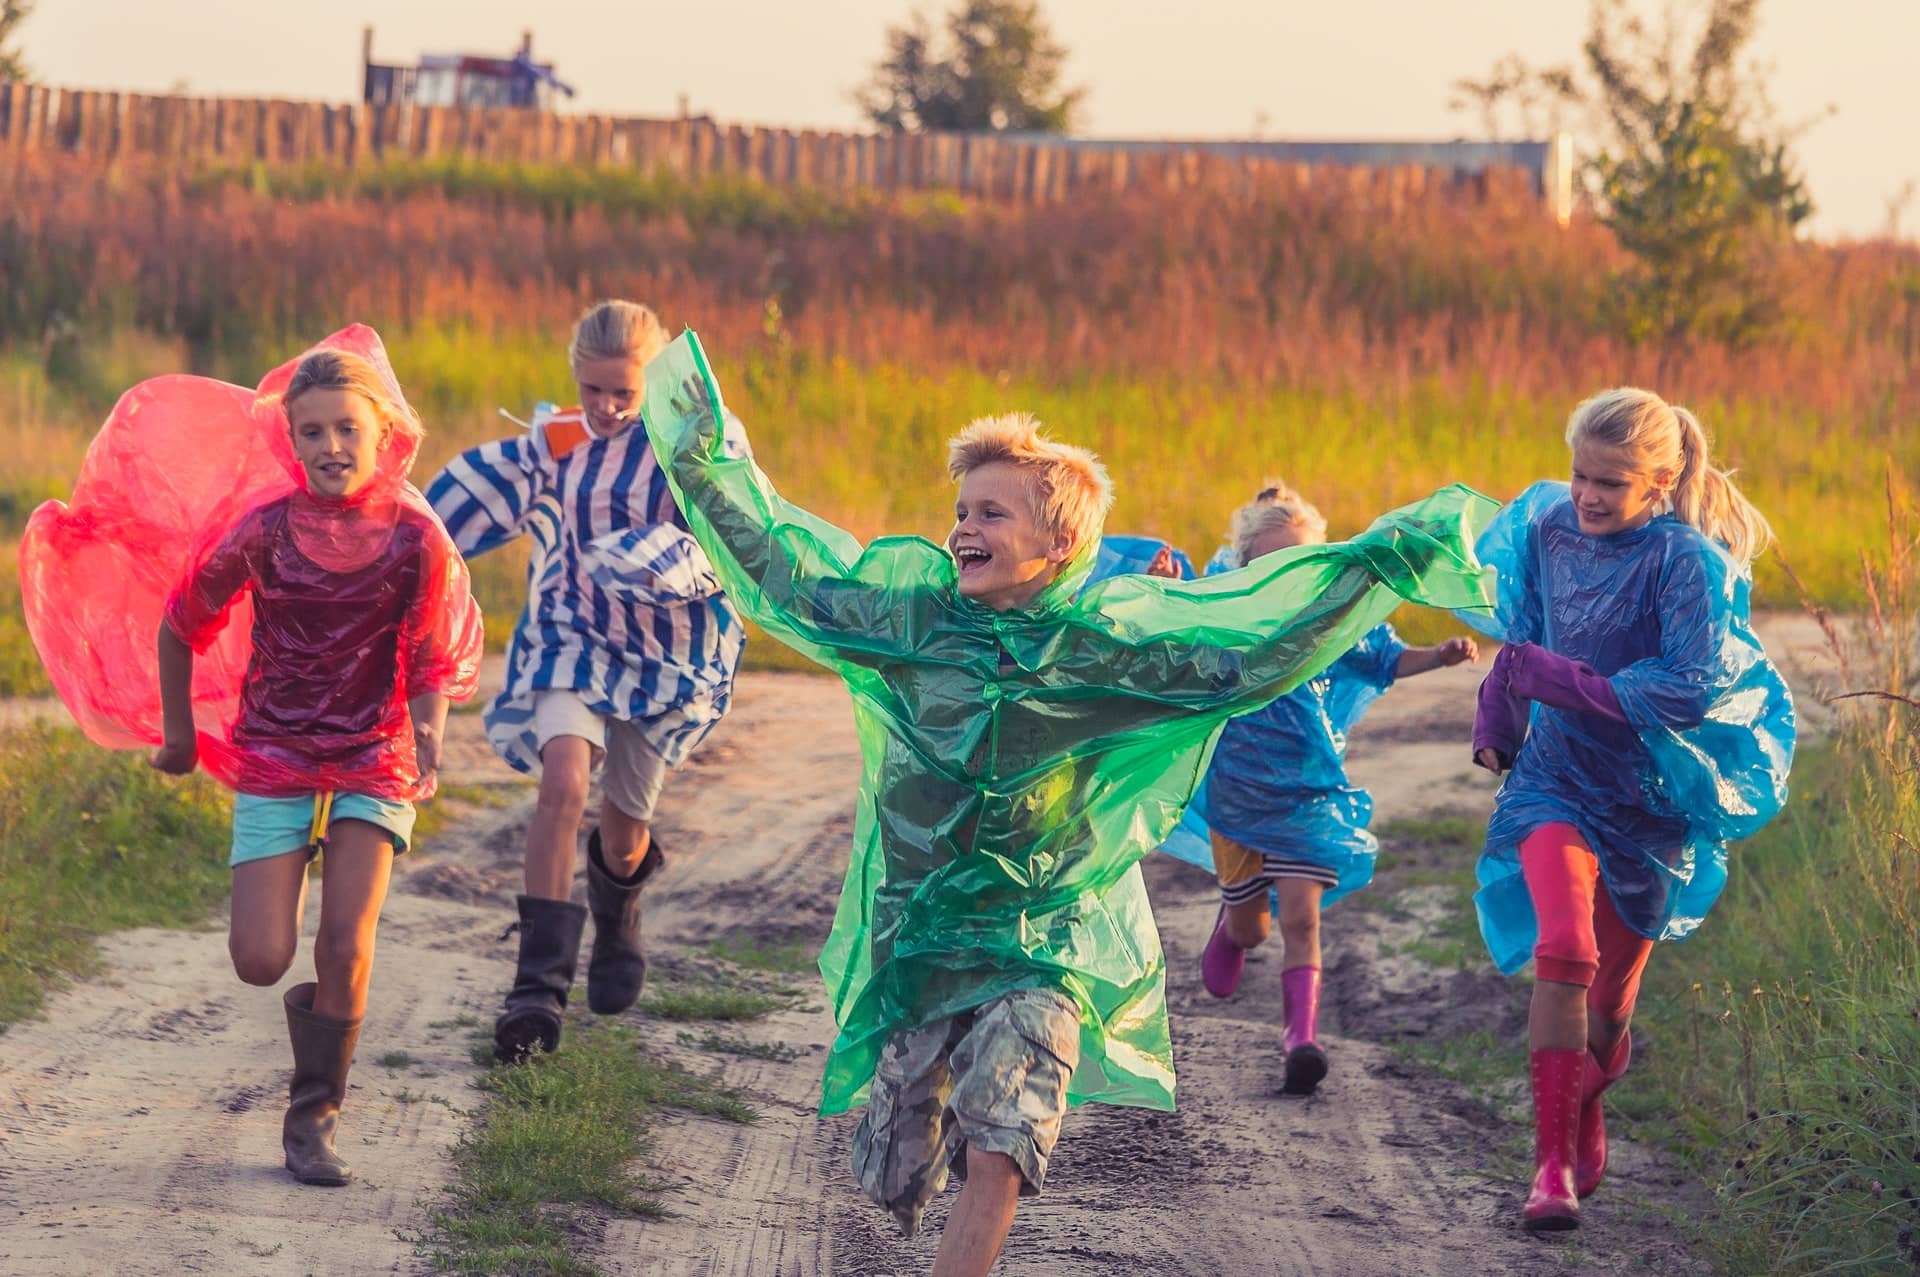 Children running in wellies and wearing rain macs